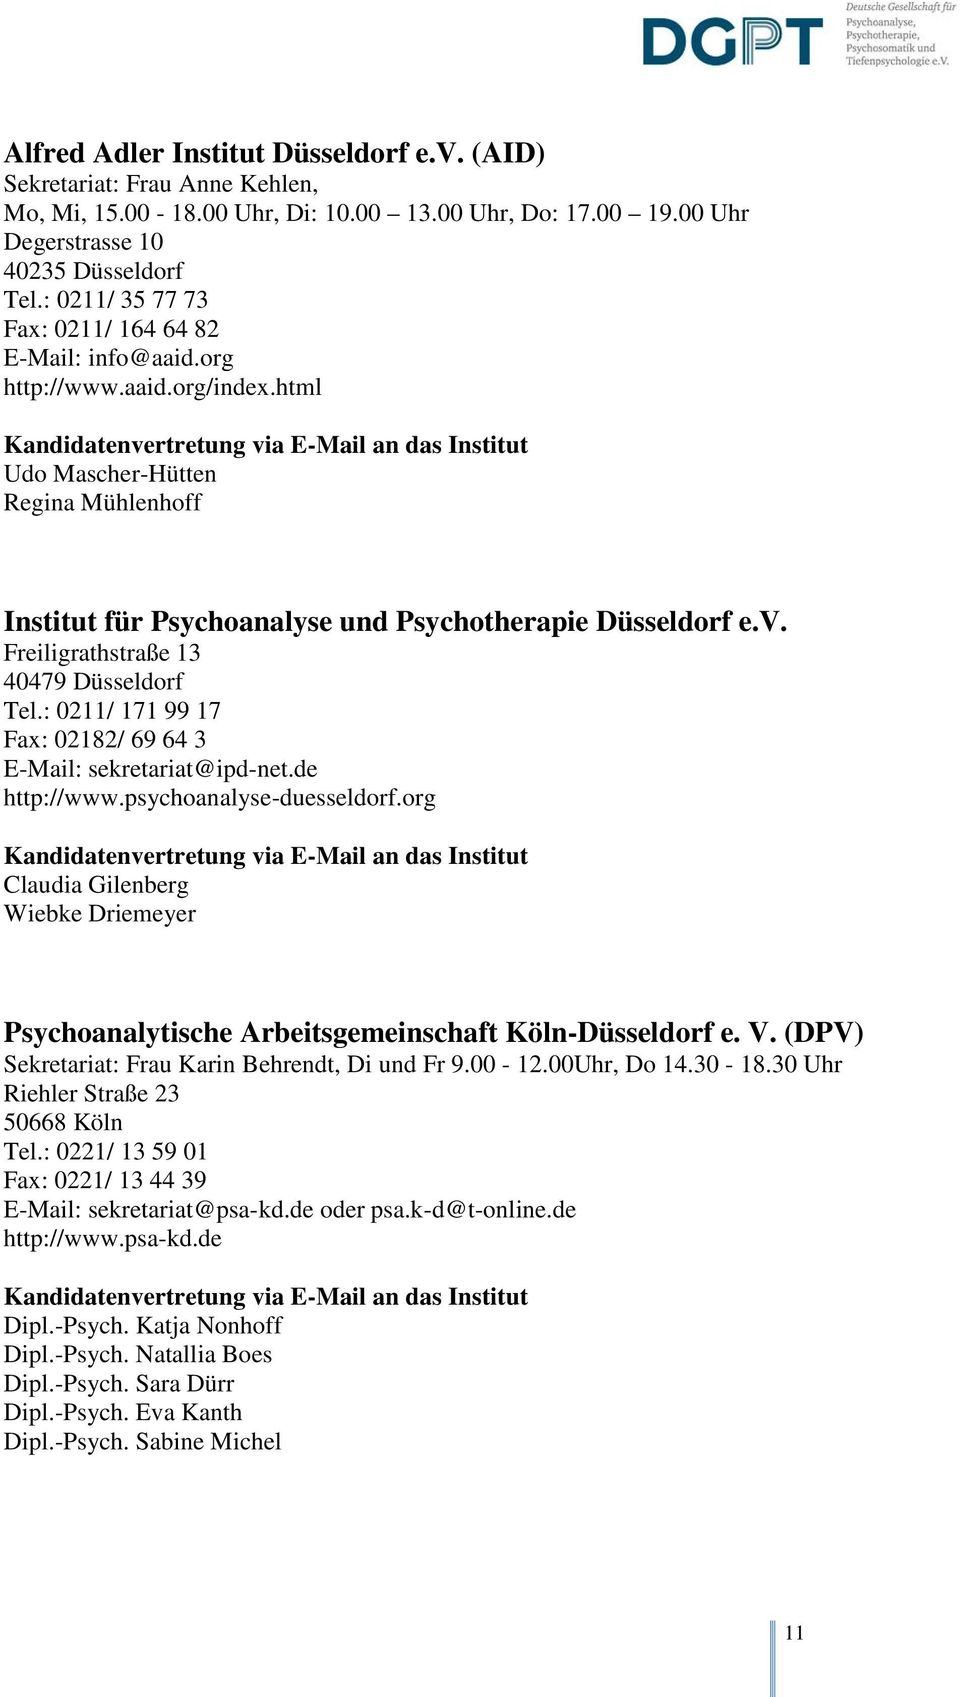 Freiligrathstraße 13 40479 Düsseldorf Tel.: 0211/ 171 99 17 Fax: 02182/ 69 64 3 E-Mail: sekretariat@ipd-net.de http://www.psychoanalyse-duesseldorf.